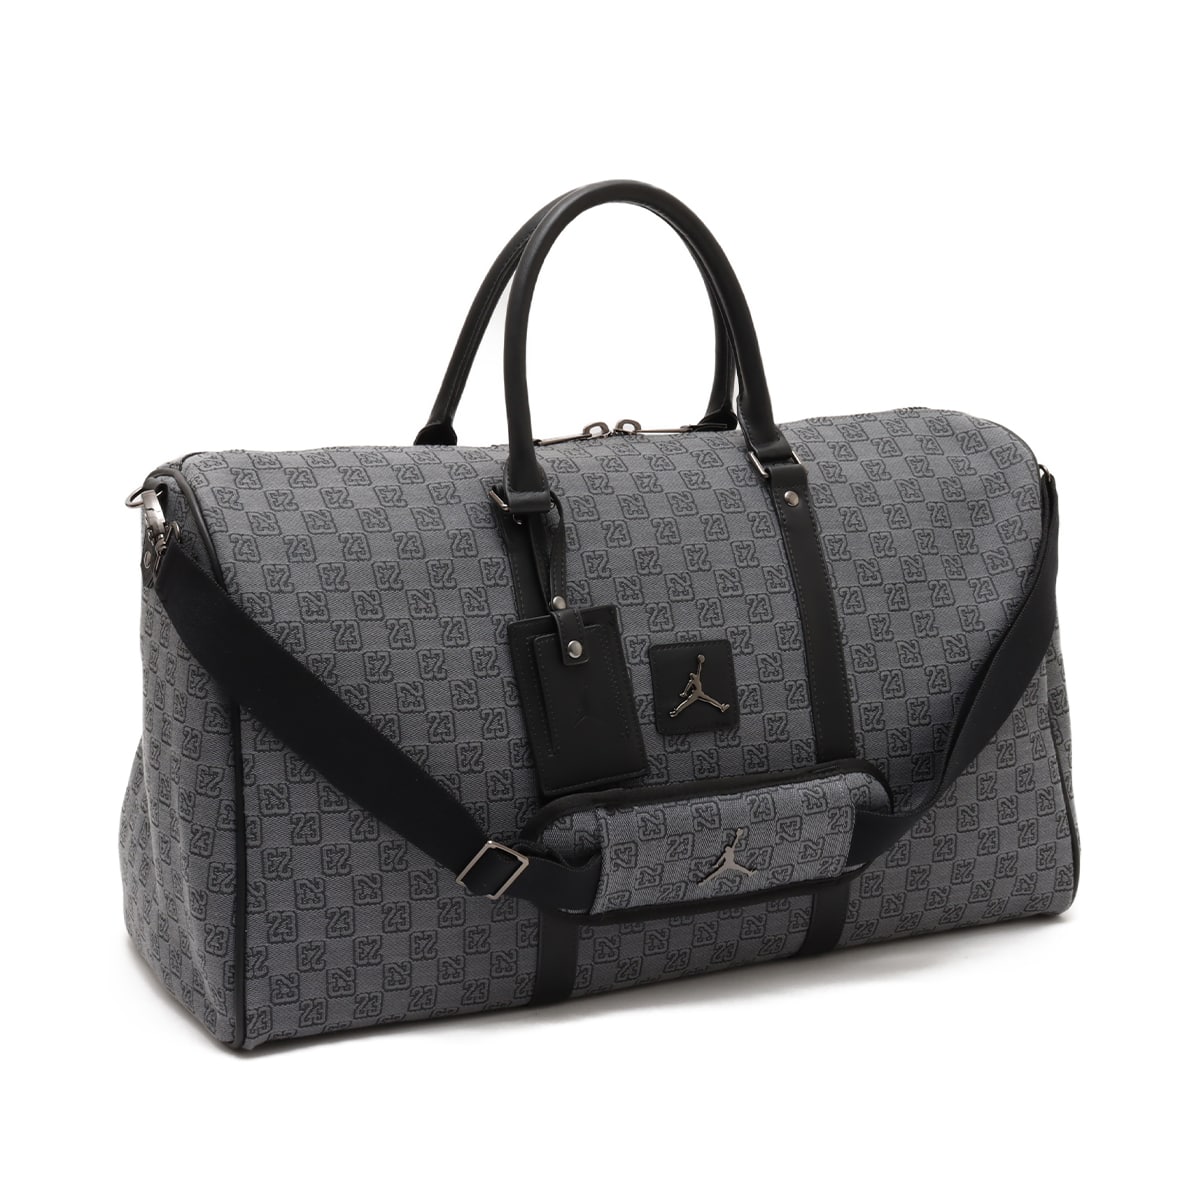 14,400円新品 Jordan Brand Monogram Duffle Bag Grey